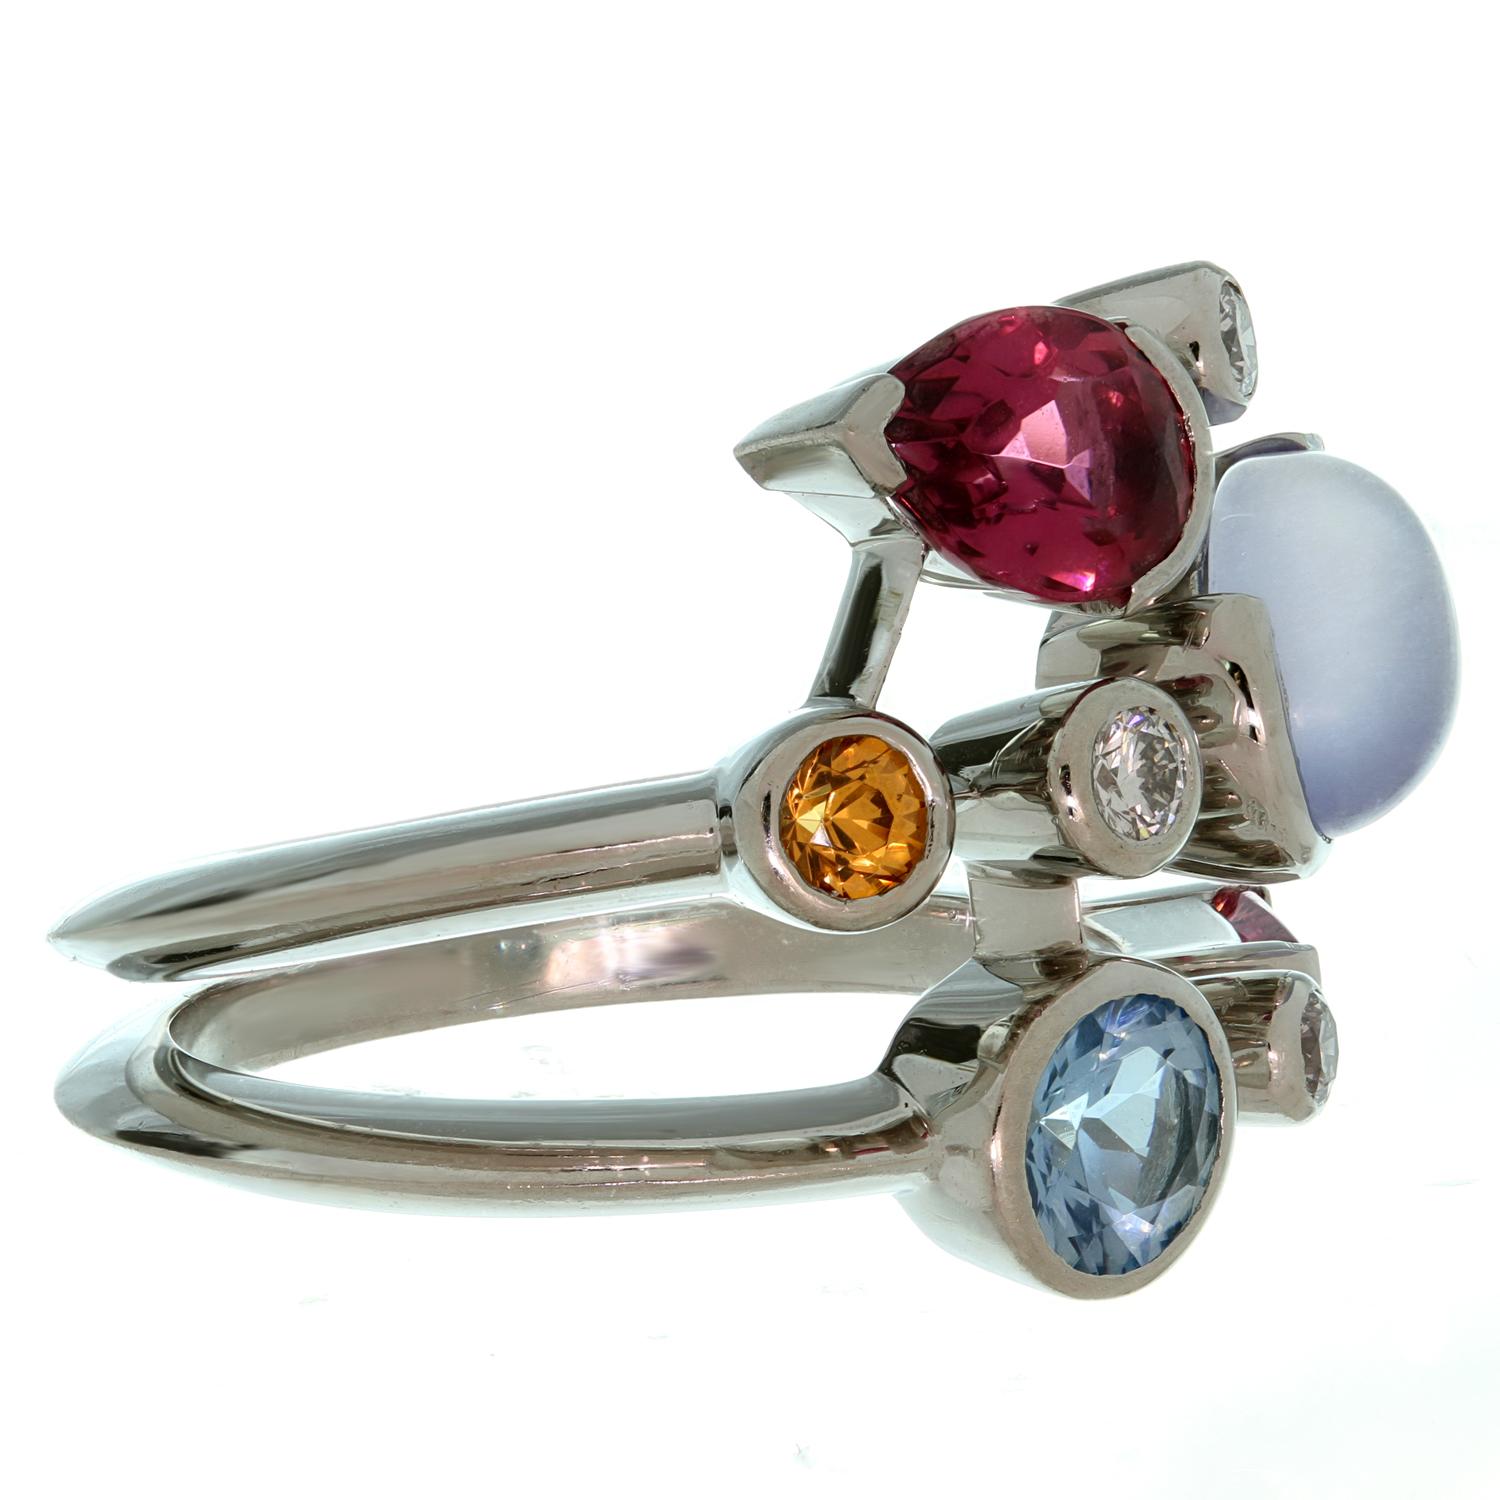 Dieser fabelhafte Ring von Cartier aus der lebhaften Collection'S Melo ist aus Platin gefertigt und zeigt 8 abstrakt auf 3 Reihen angeordnete Edelsteine, bestehend aus Diamanten, Aquamarin, Chalzedon, Granat und rosa Turmalin. Es gibt 3 runde